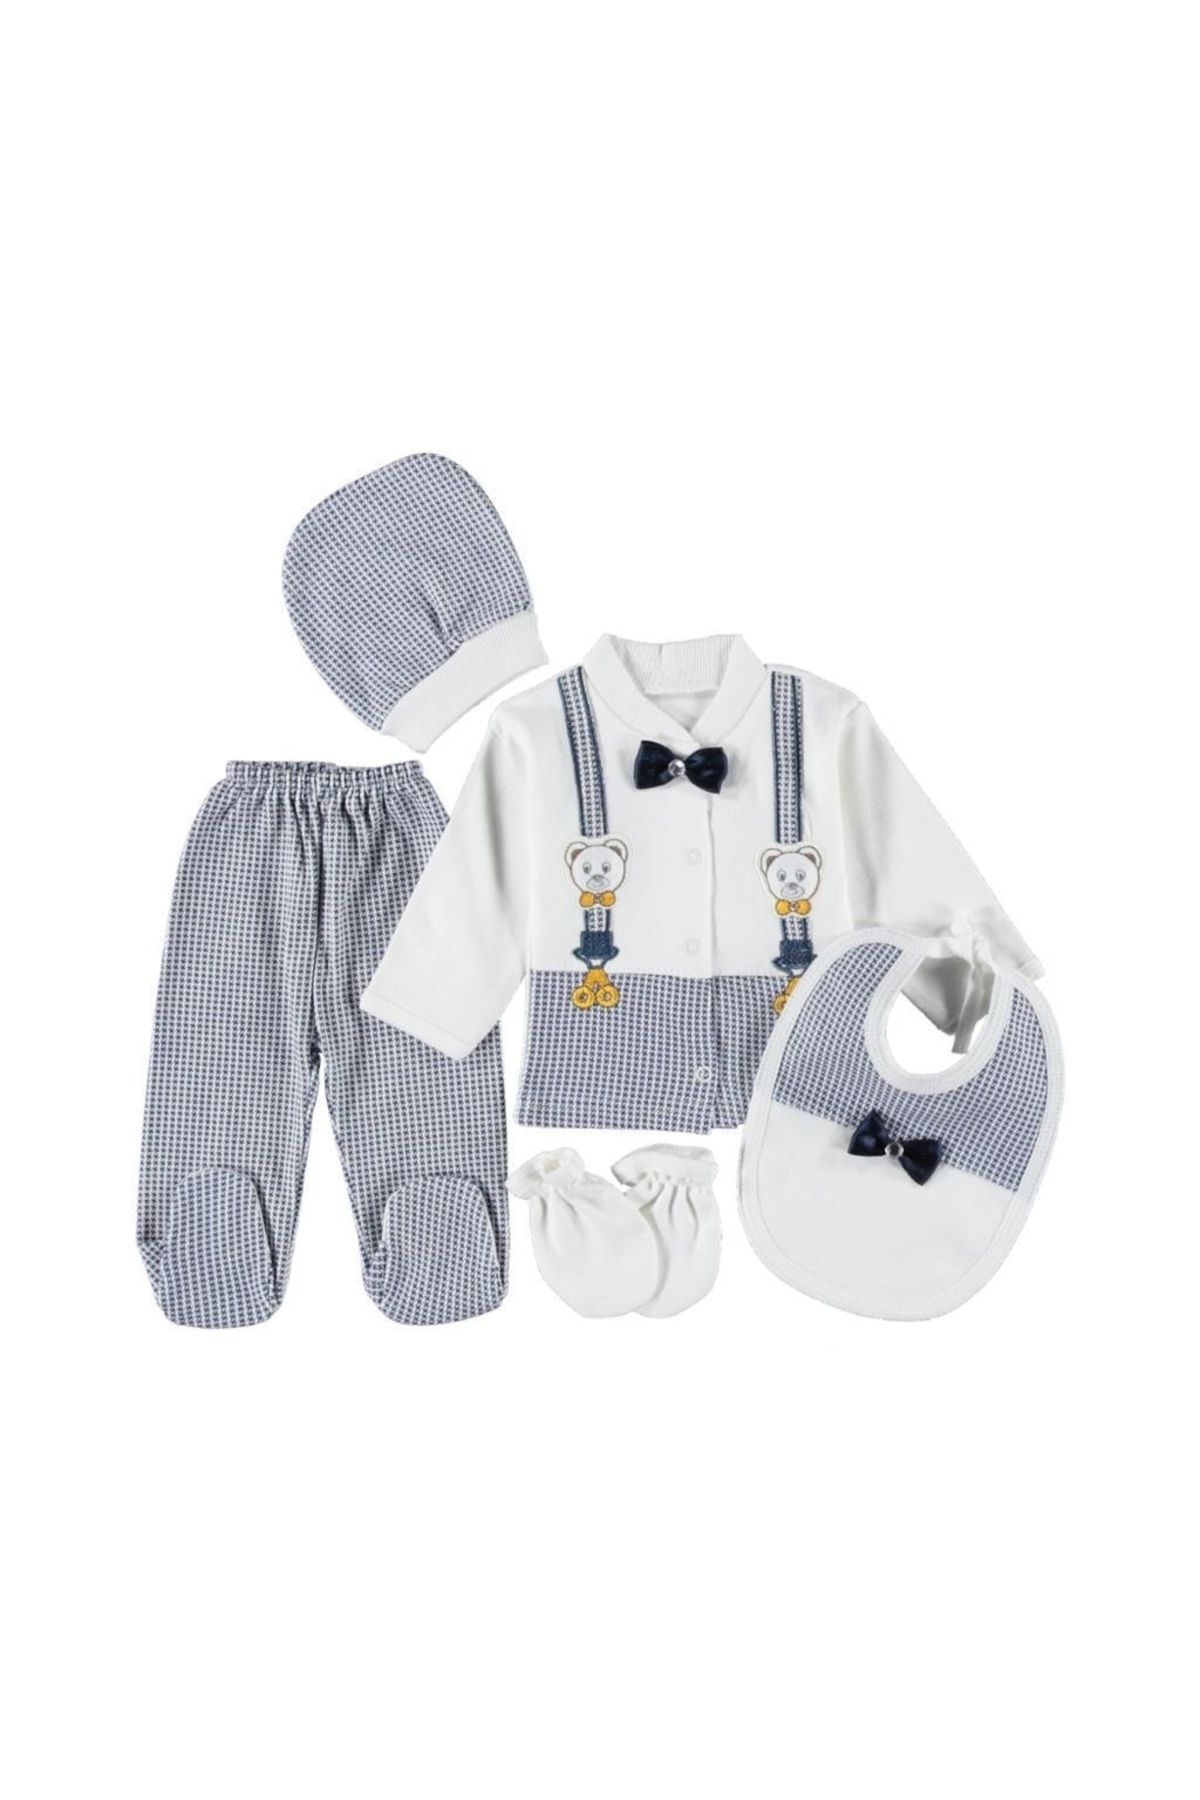 teknotrust Pamuklu (KUTULU) Ayıcıklı Lacivert Papyonlu Yenidoğan Kıyafetleri Bebek Kıyafetleri 5’li Hastahane